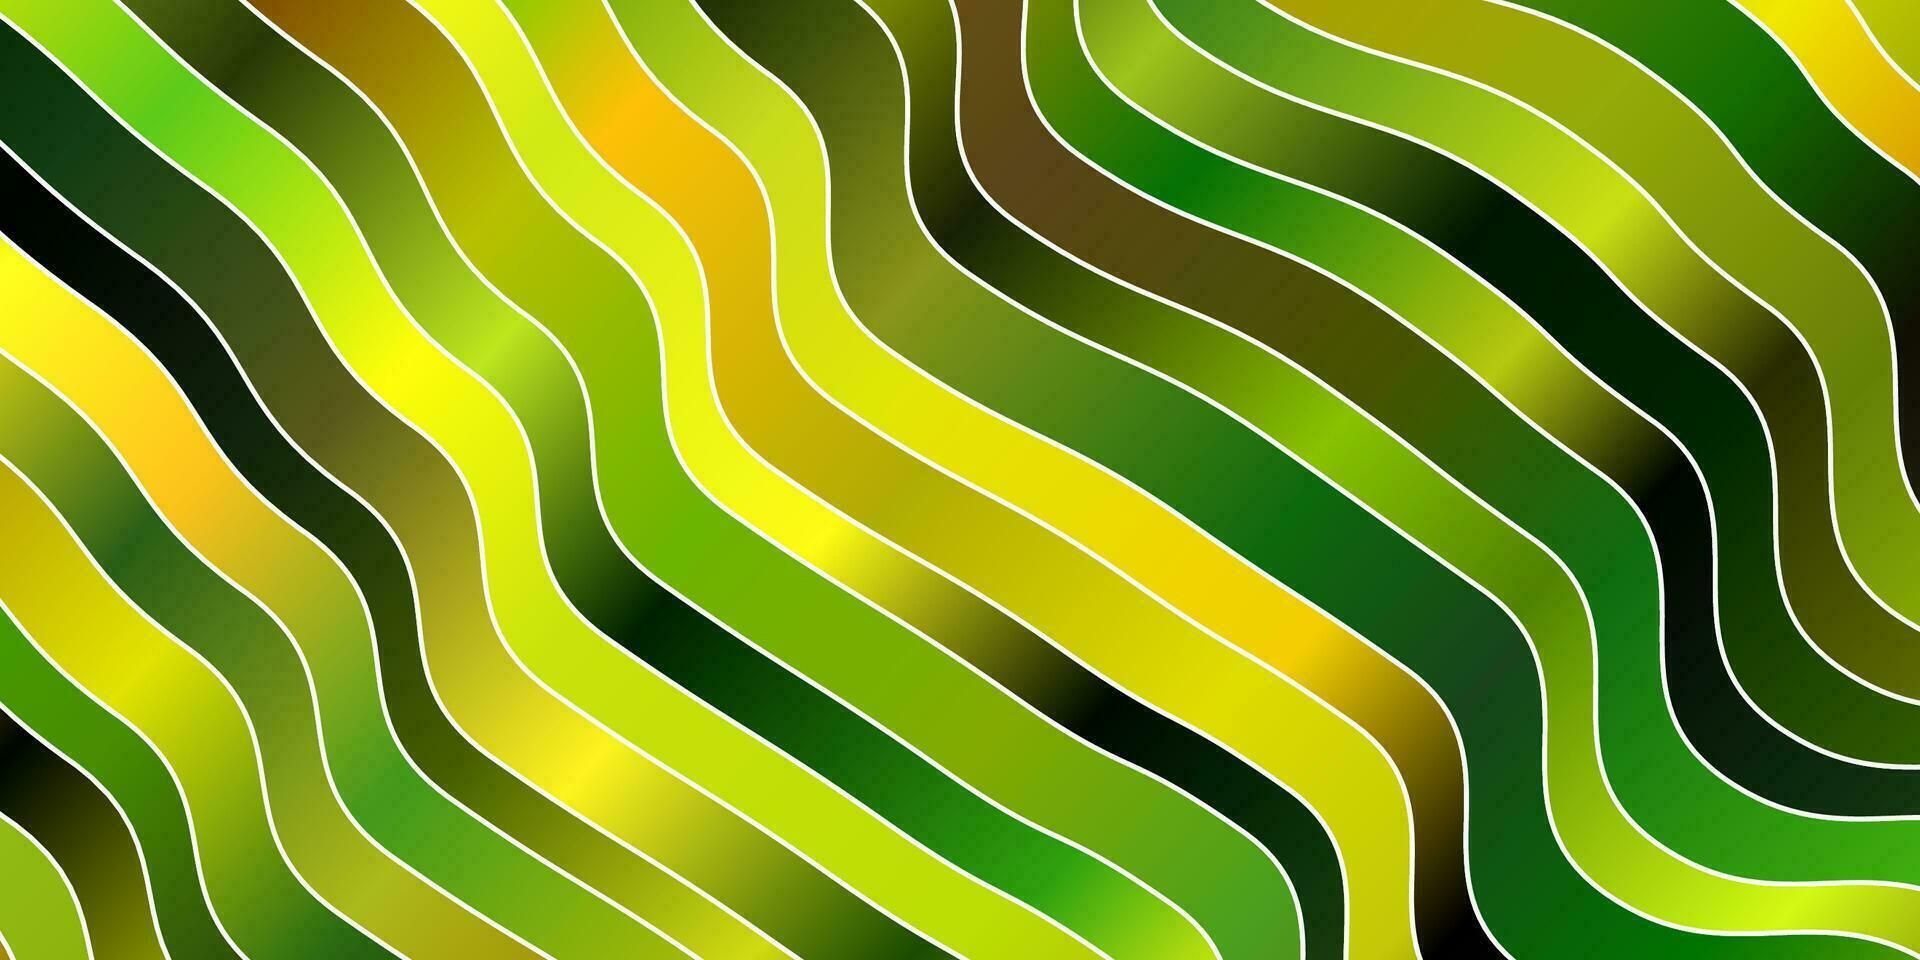 ljusgrön, gul vektormall med kurvor. vektor